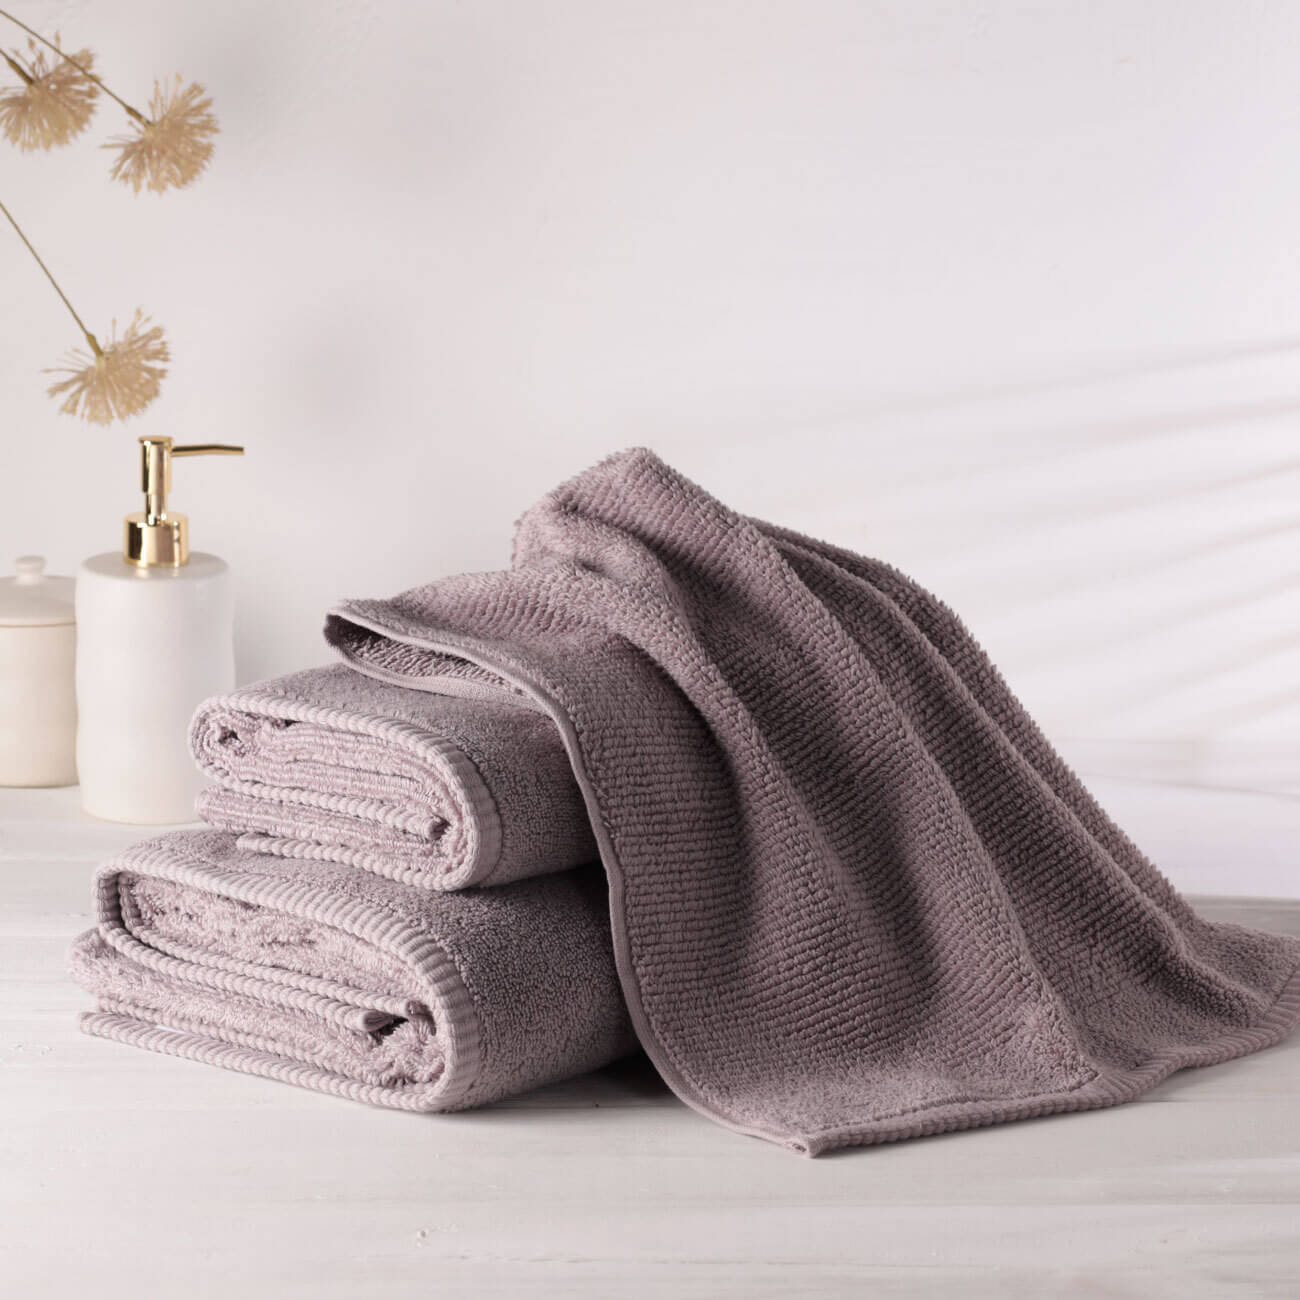 Полотенце, 40х60 см, хлопок, лиловое, Terry cotton полотенце классик персиковый р 33х60